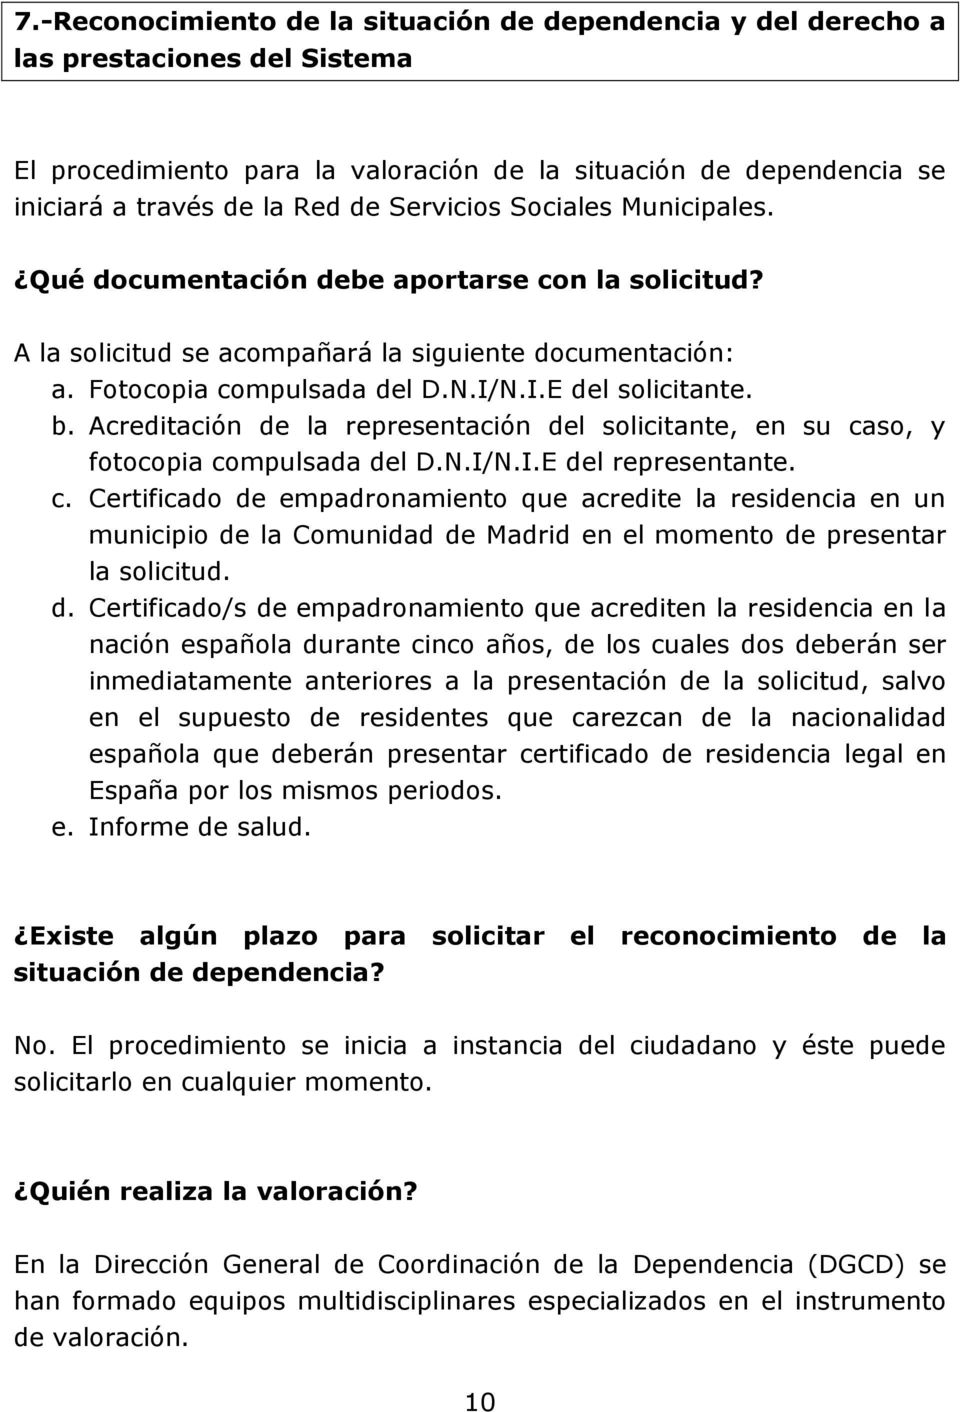 Acreditación de la representación del solicitante, en su caso, y fotocopia compulsada del D.N.I/N.I.E del representante. c. Certificado de empadronamiento que acredite la residencia en un municipio de la Comunidad de Madrid en el momento de presentar la solicitud.